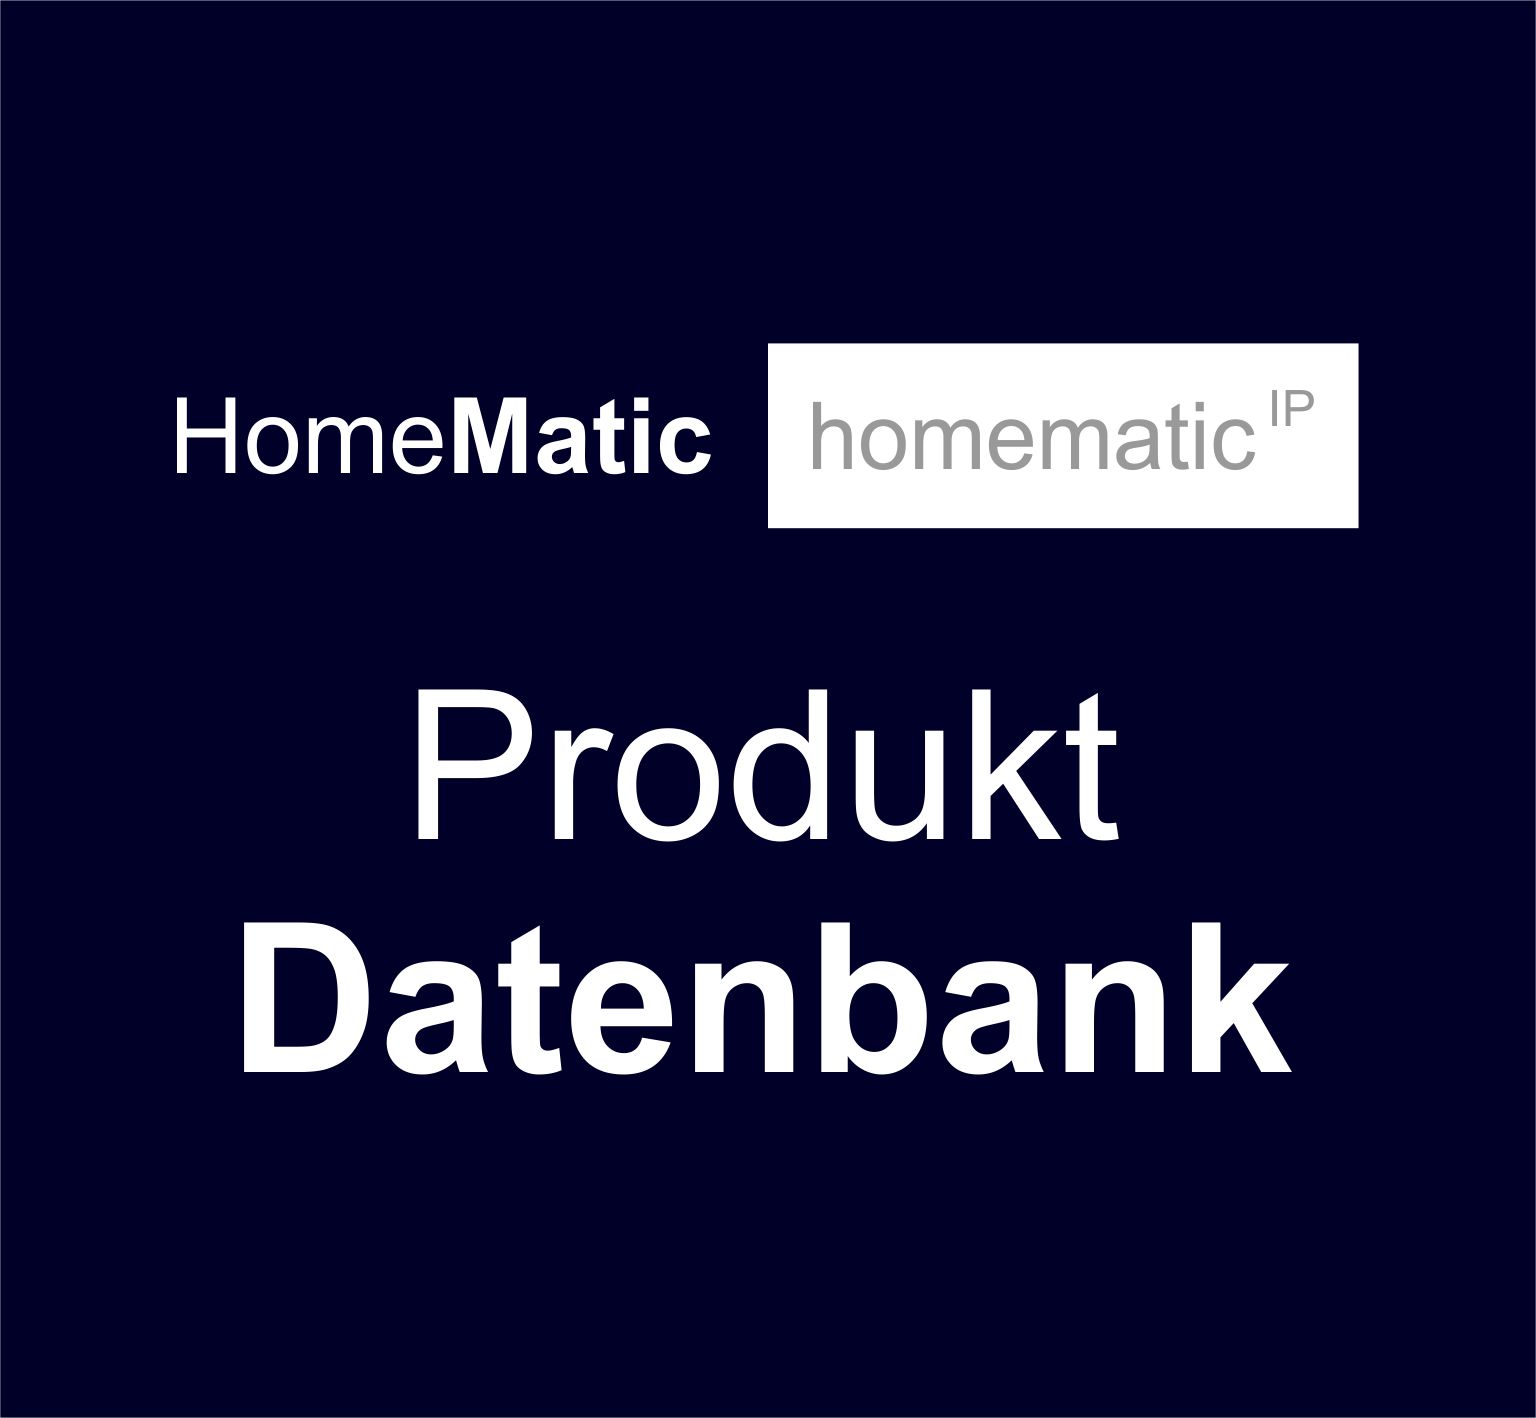 HeimMatik - Produktdetails